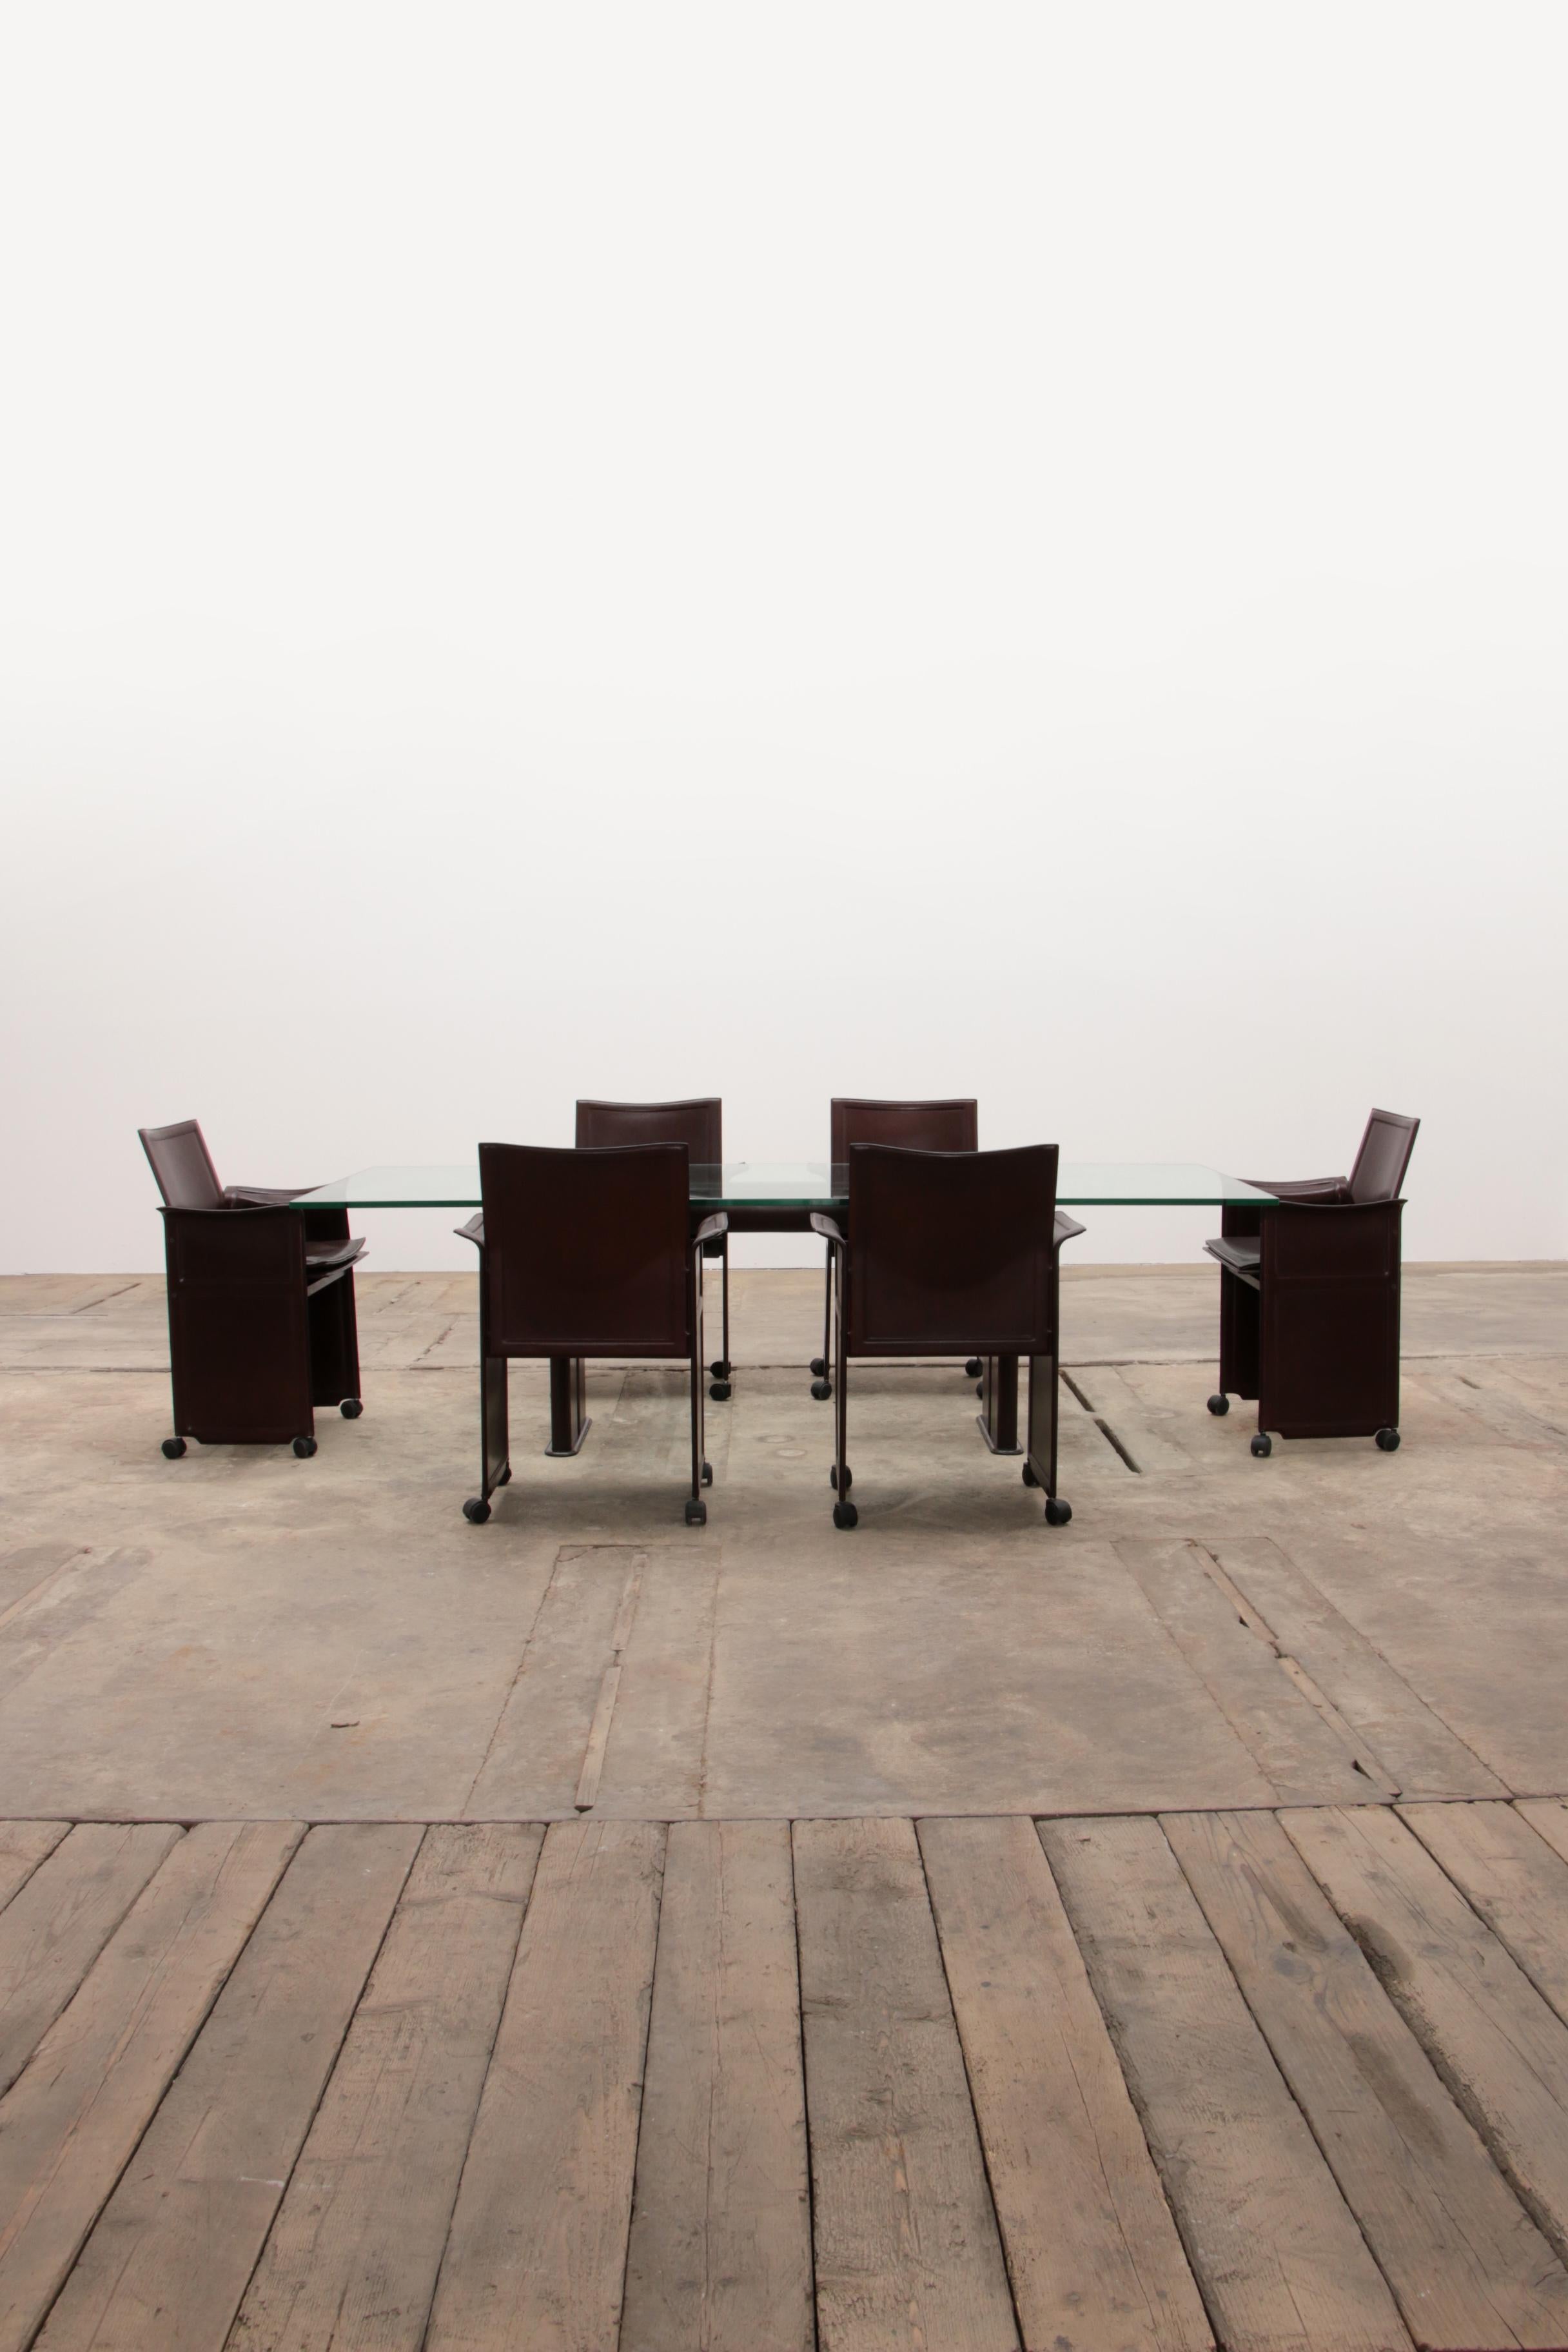 Tito Agnoli für Matteo Grassi Esstisch aus Leder und sechs Stühle.

Der Tisch hat die gleiche schöne braune Farbe und ist mit Leder bezogen. Das Glas ist in bestem Zustand. Schwere Glasplatte, 1,5 cm dick.

Modernes Set aus 6 schokoladenbraunen